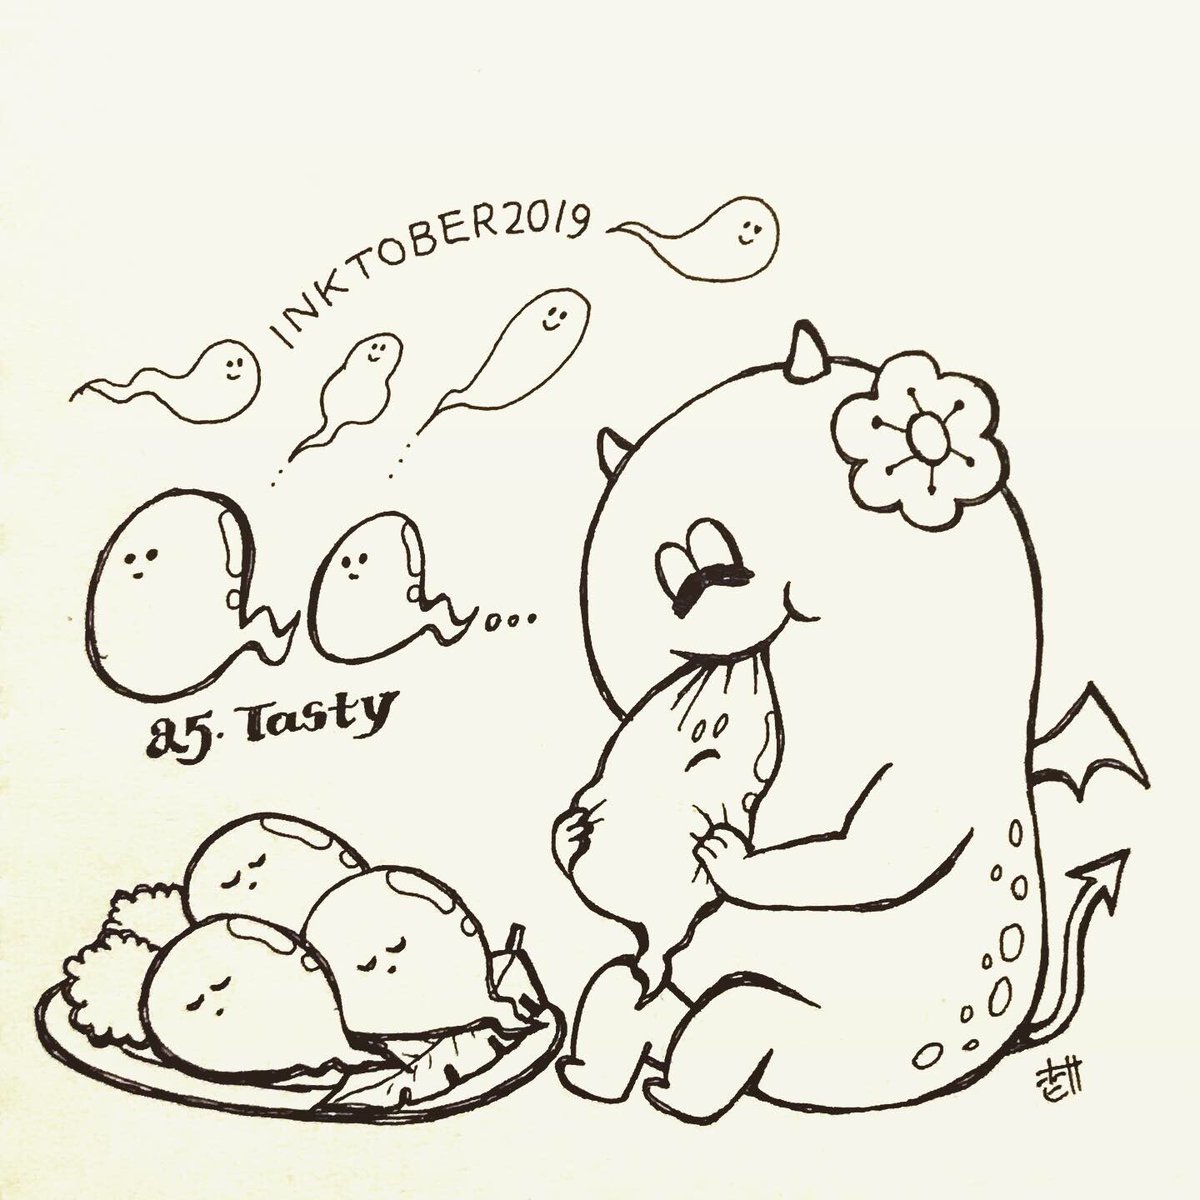 25 TASTY
モニモニ食べる
#inktober2019 #inktober #illustration 